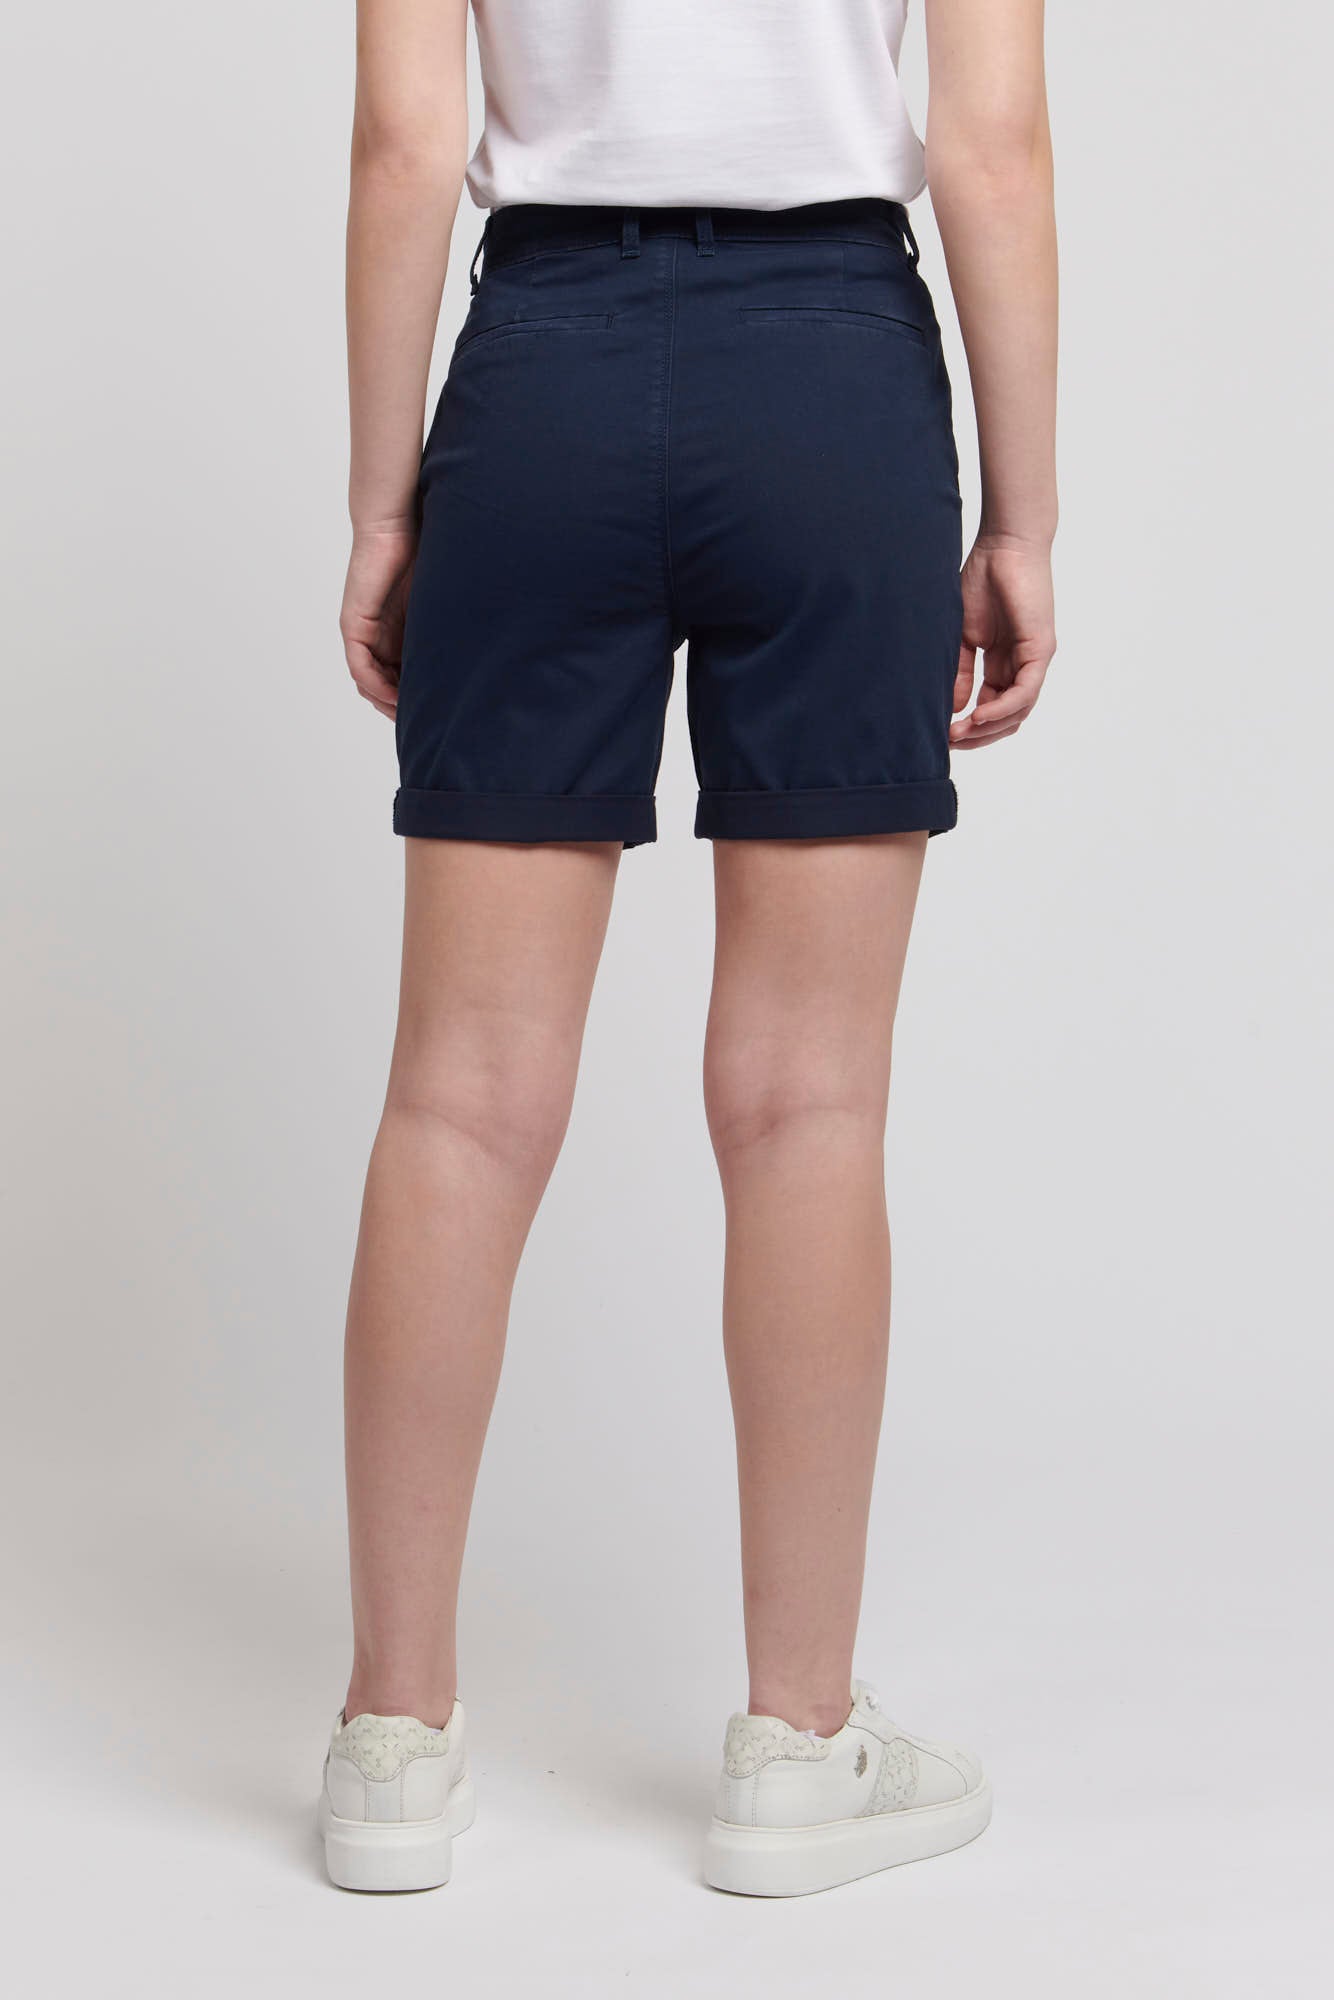 Womens Classic Chino Shorts in Navy Iris